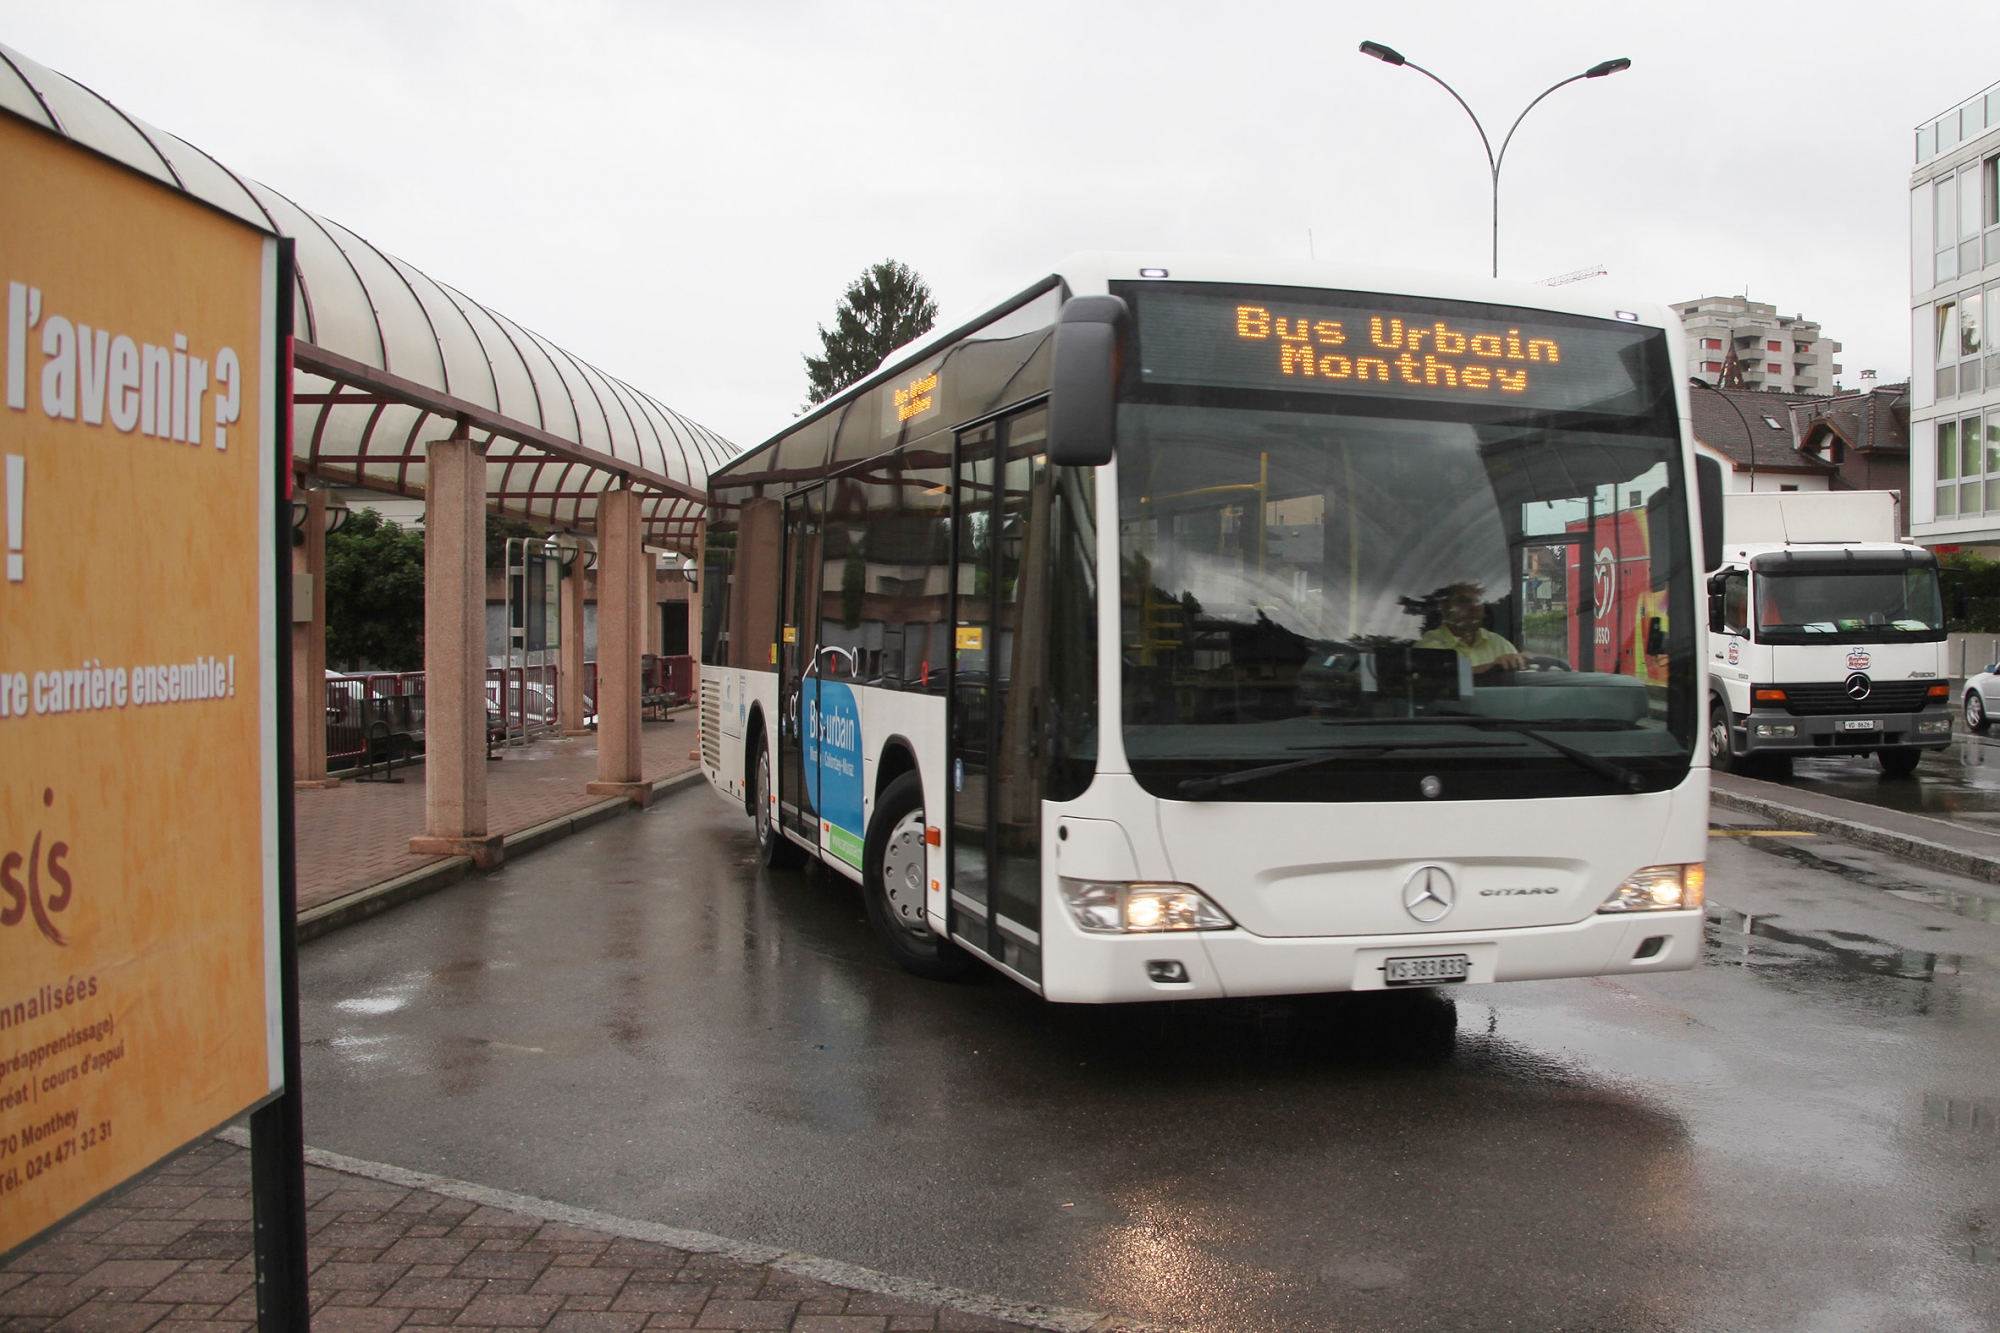 Le bus urbain circule à Monthey depuis 2012. Il fera partie de l'offre du bus d'agglo qui verra le jour en décembre 2018.